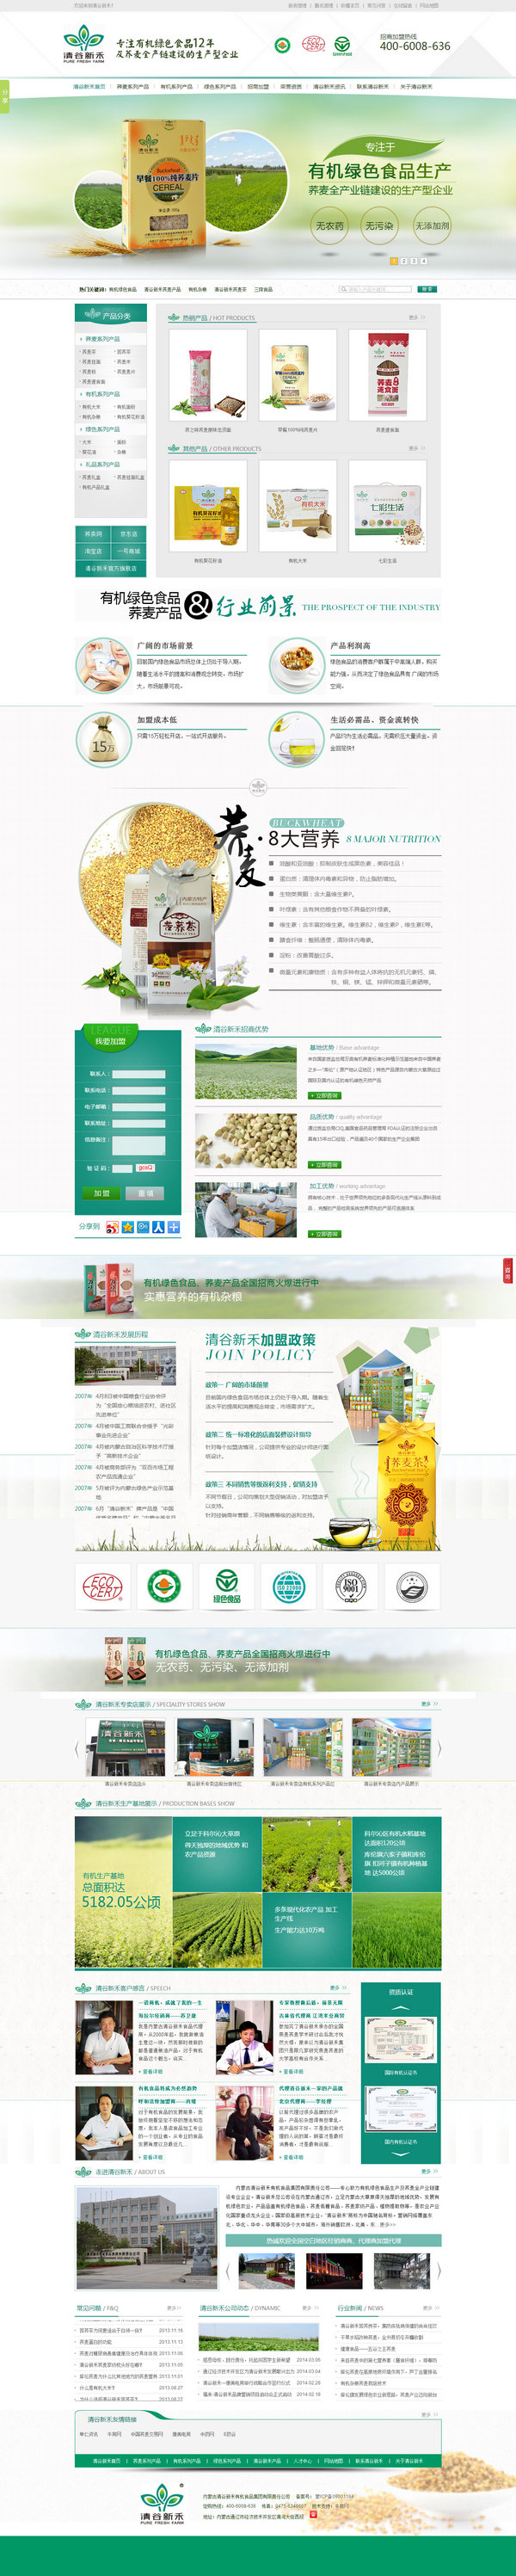 清谷新禾有机绿色食品营销型网站展示